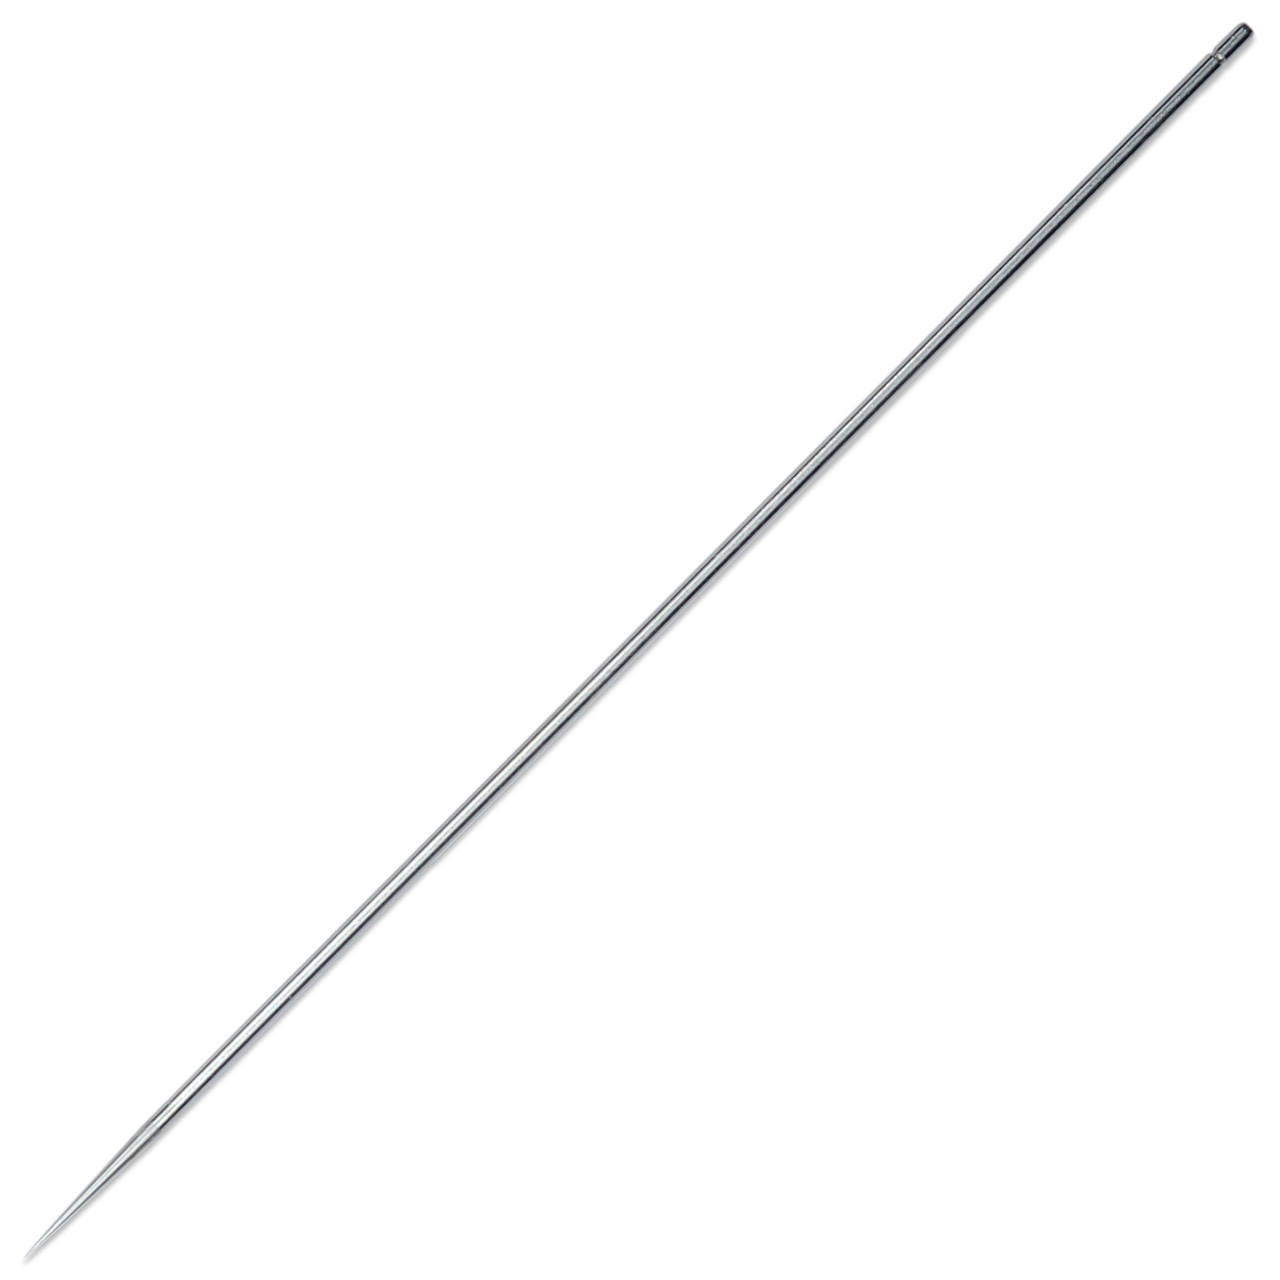 Airbrush Needle - Size 1.4 - Beauticom, Inc.